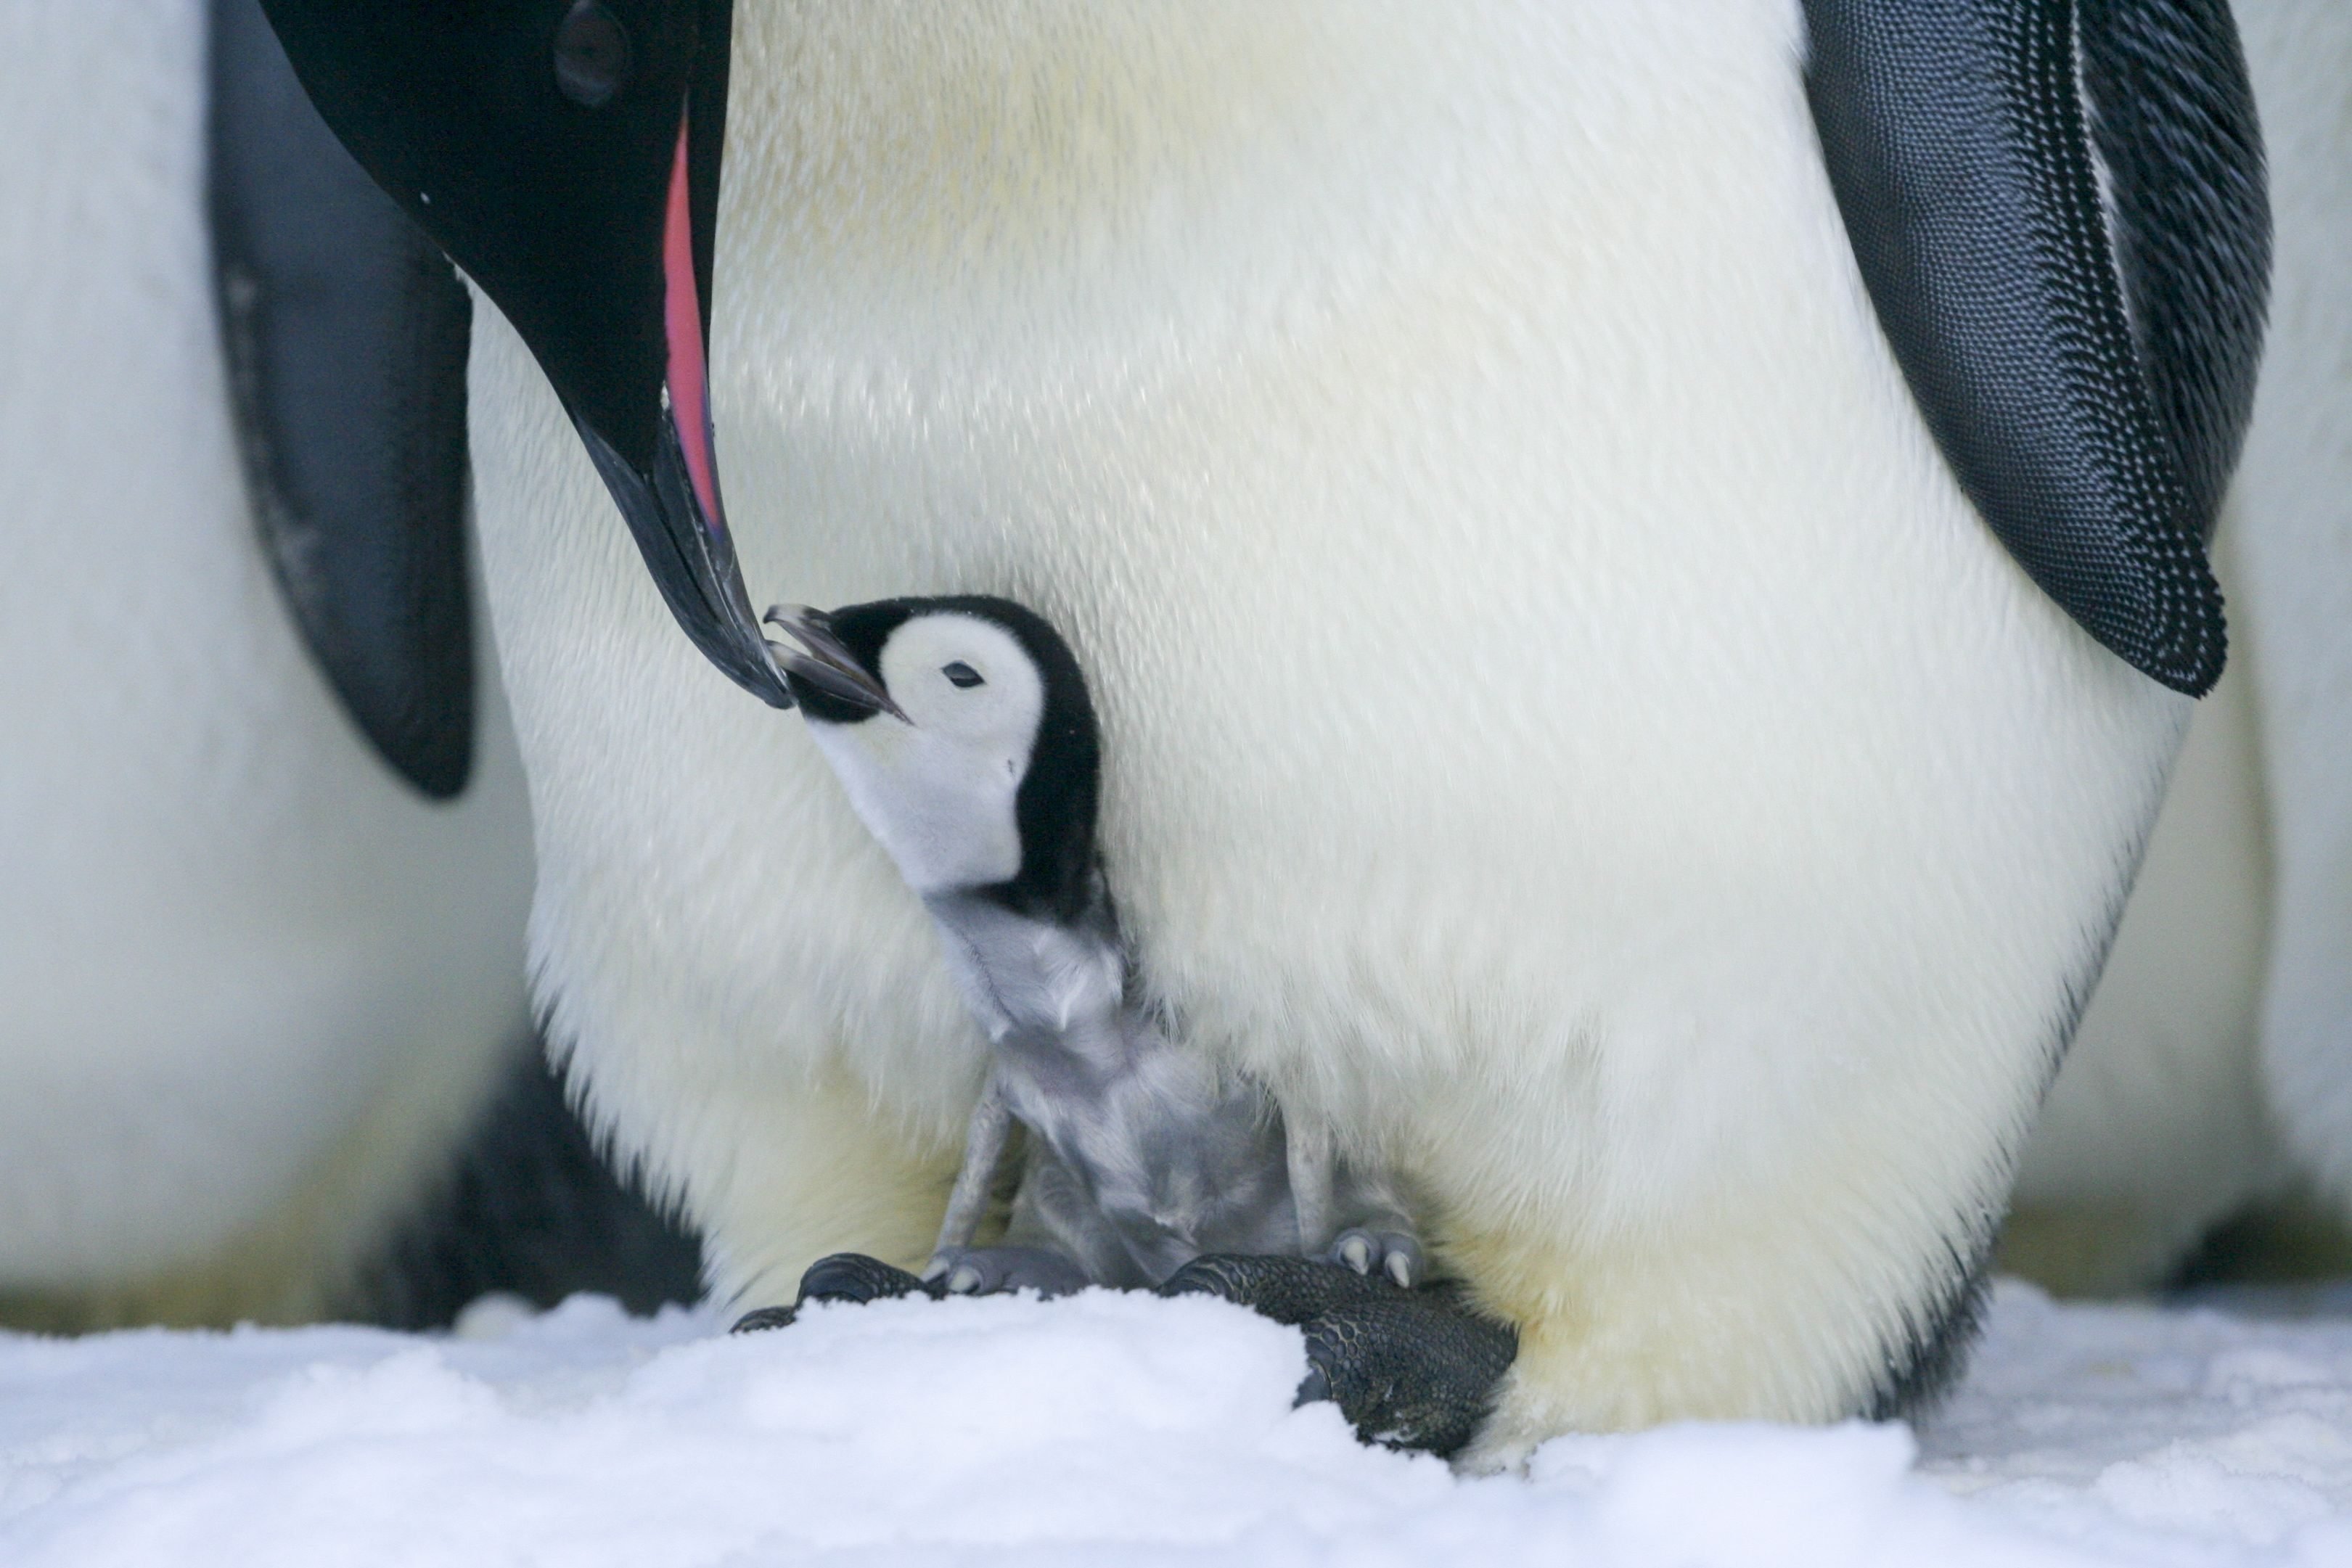 Crédito requerido: Foto de Samuel Blanc/Solent News/Shutterstock (5501876d) Esta increíble fotografía muestra el poderoso vínculo entre un padre y un pingüino bebé mientras se acurrucan juntos en busca de calor.  El polluelo gris aún no ha desarrollado sus plumas impermeables, por lo que se protege del invierno antártico al posarse sobre las piernas de sus padres.  Pingüinos emperadores en la Antártida - 22 de diciembre de 2015 De vez en cuando, el amoroso padre baja el cuello hasta el suelo para comprobar que el bebé pingüino está bien.  Esta adorable pareja son solo dos de los muchos pingüinos emperador, con alrededor de otras 3000 parejas en la enorme colonia.  El guía de campo Samuel Blanc capturó estas impresionantes fotografías durante una estadía de 15 meses en una estación de investigación francesa en Terre Adélie, Antártida.